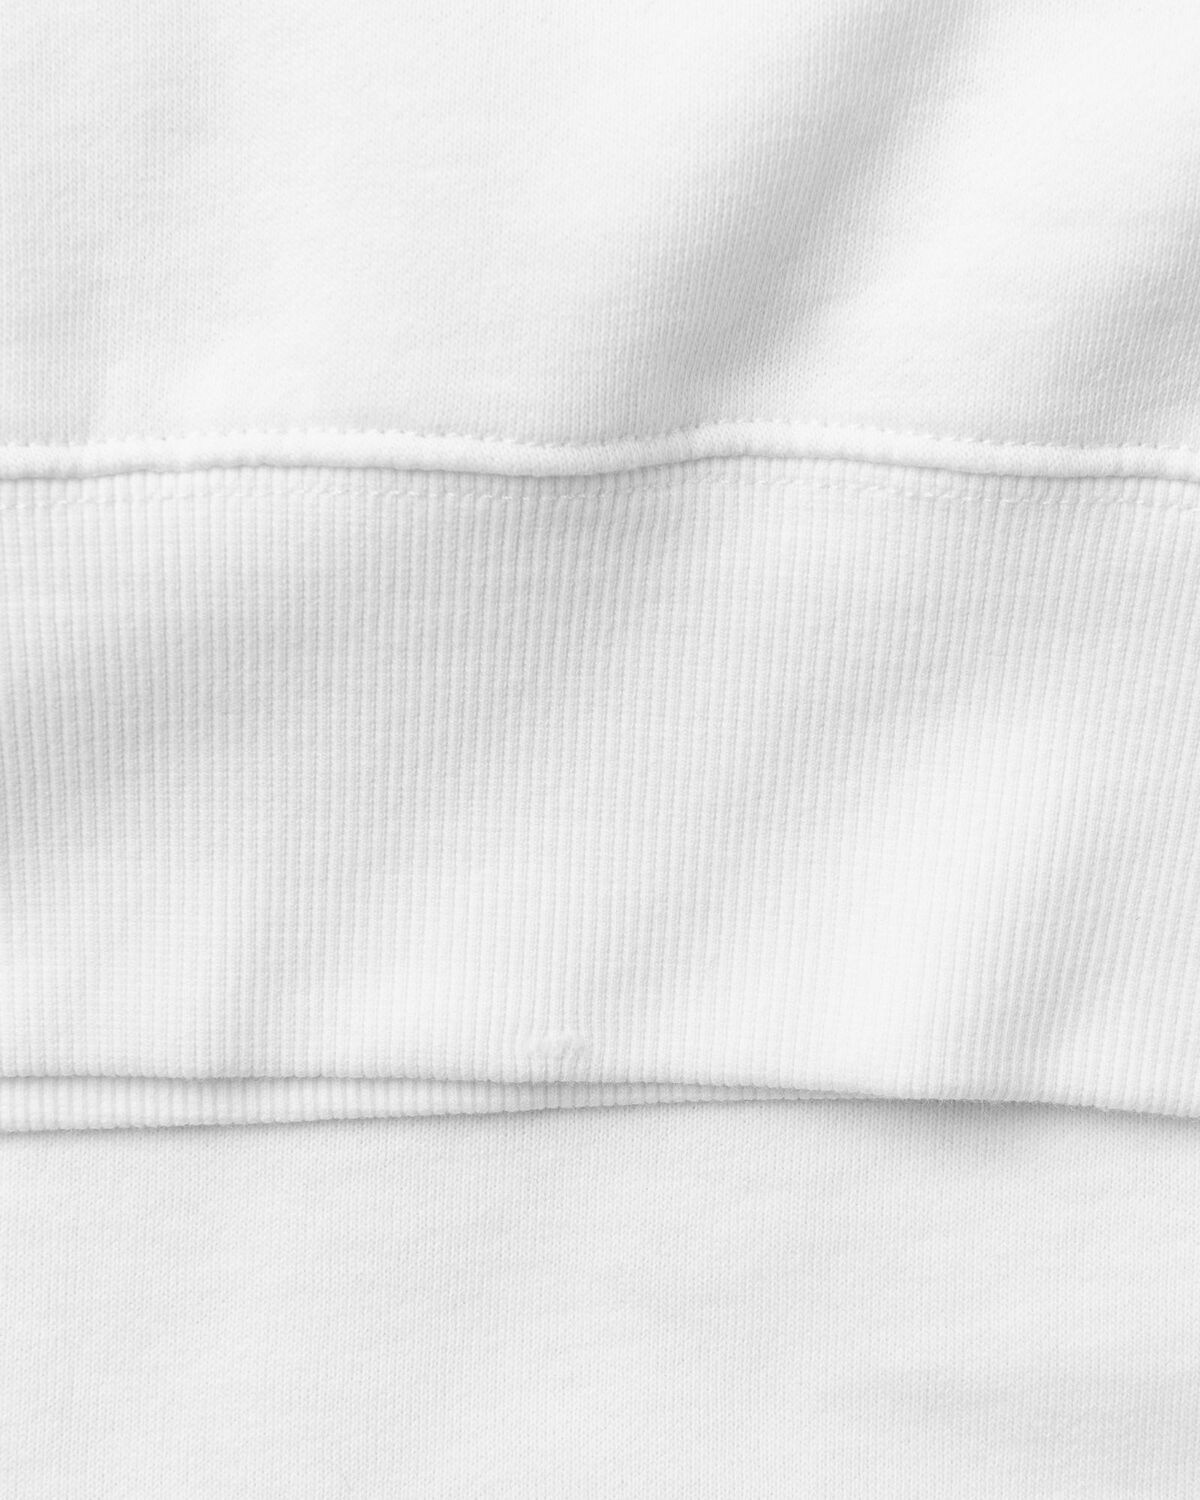 Bstn Brand Vierundvierzig Crewneck White - Womens - Sweatshirts